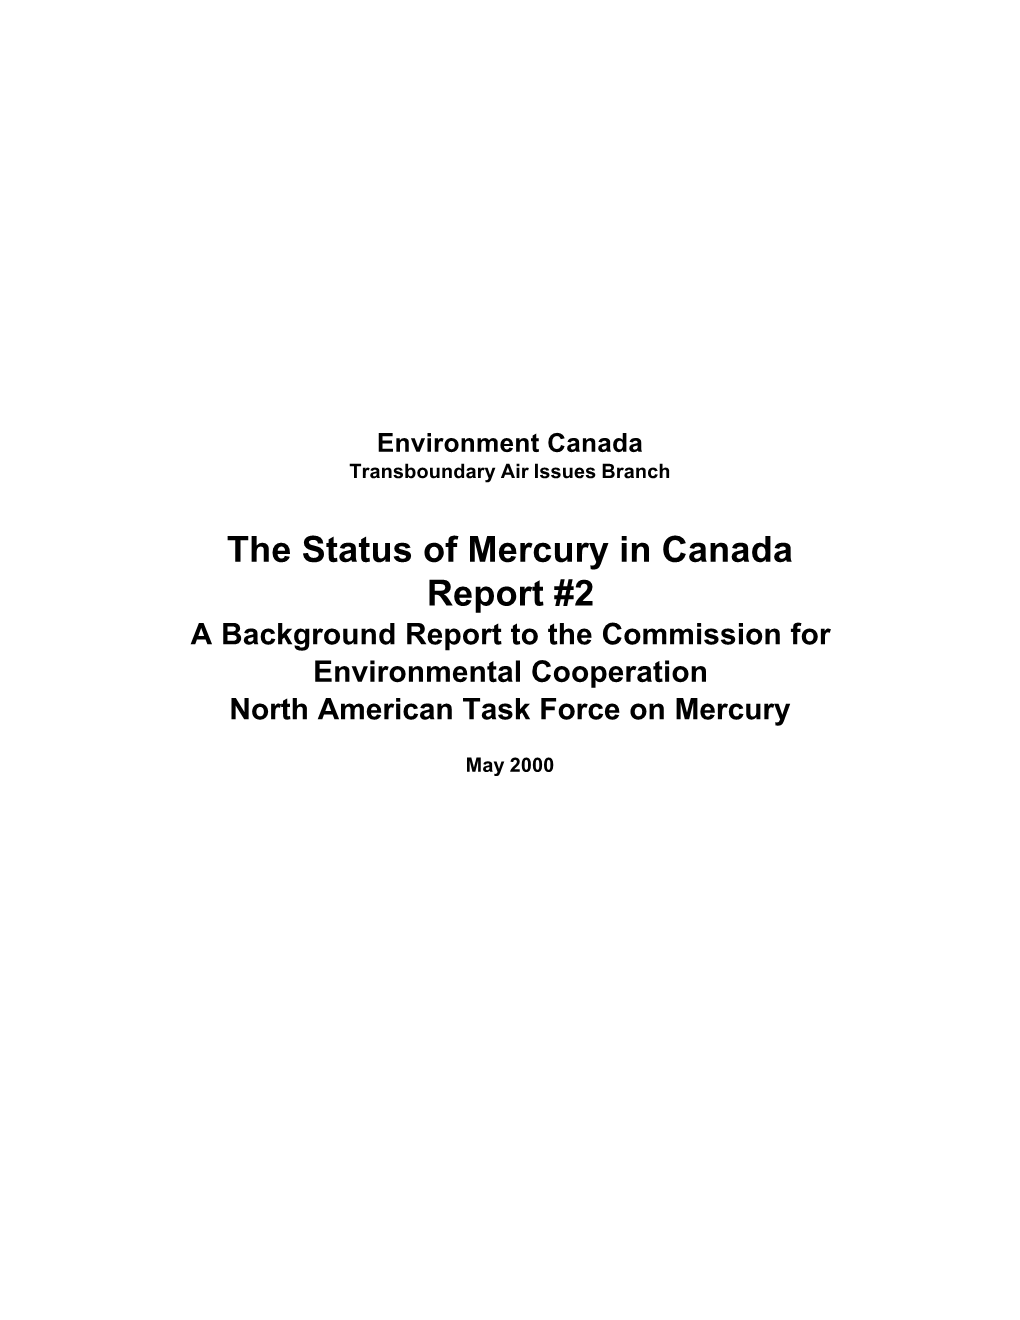 The Status of Mercury in Canada, Report #2